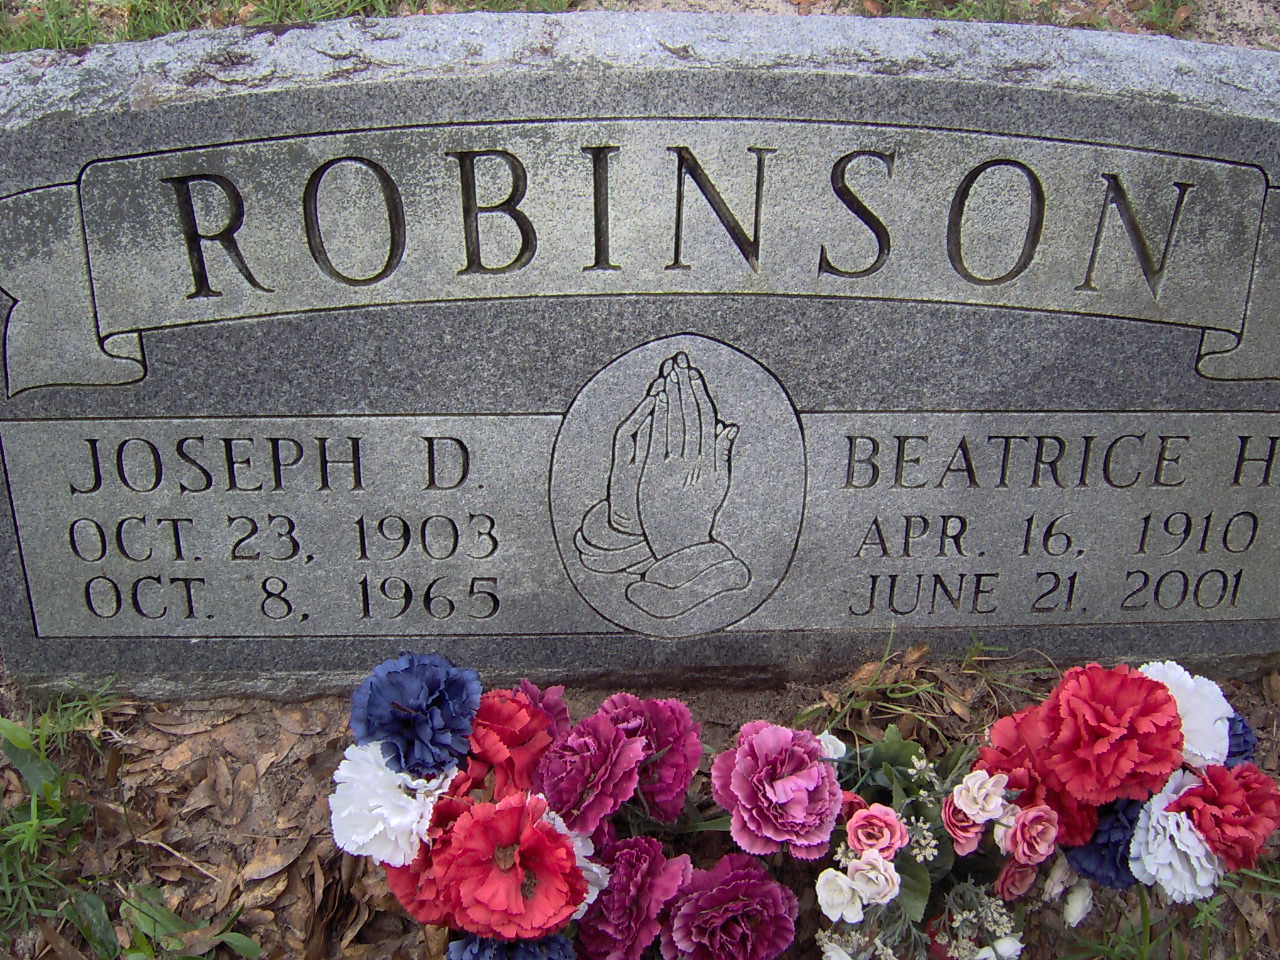 Headstone for Robinson, Joseph D.